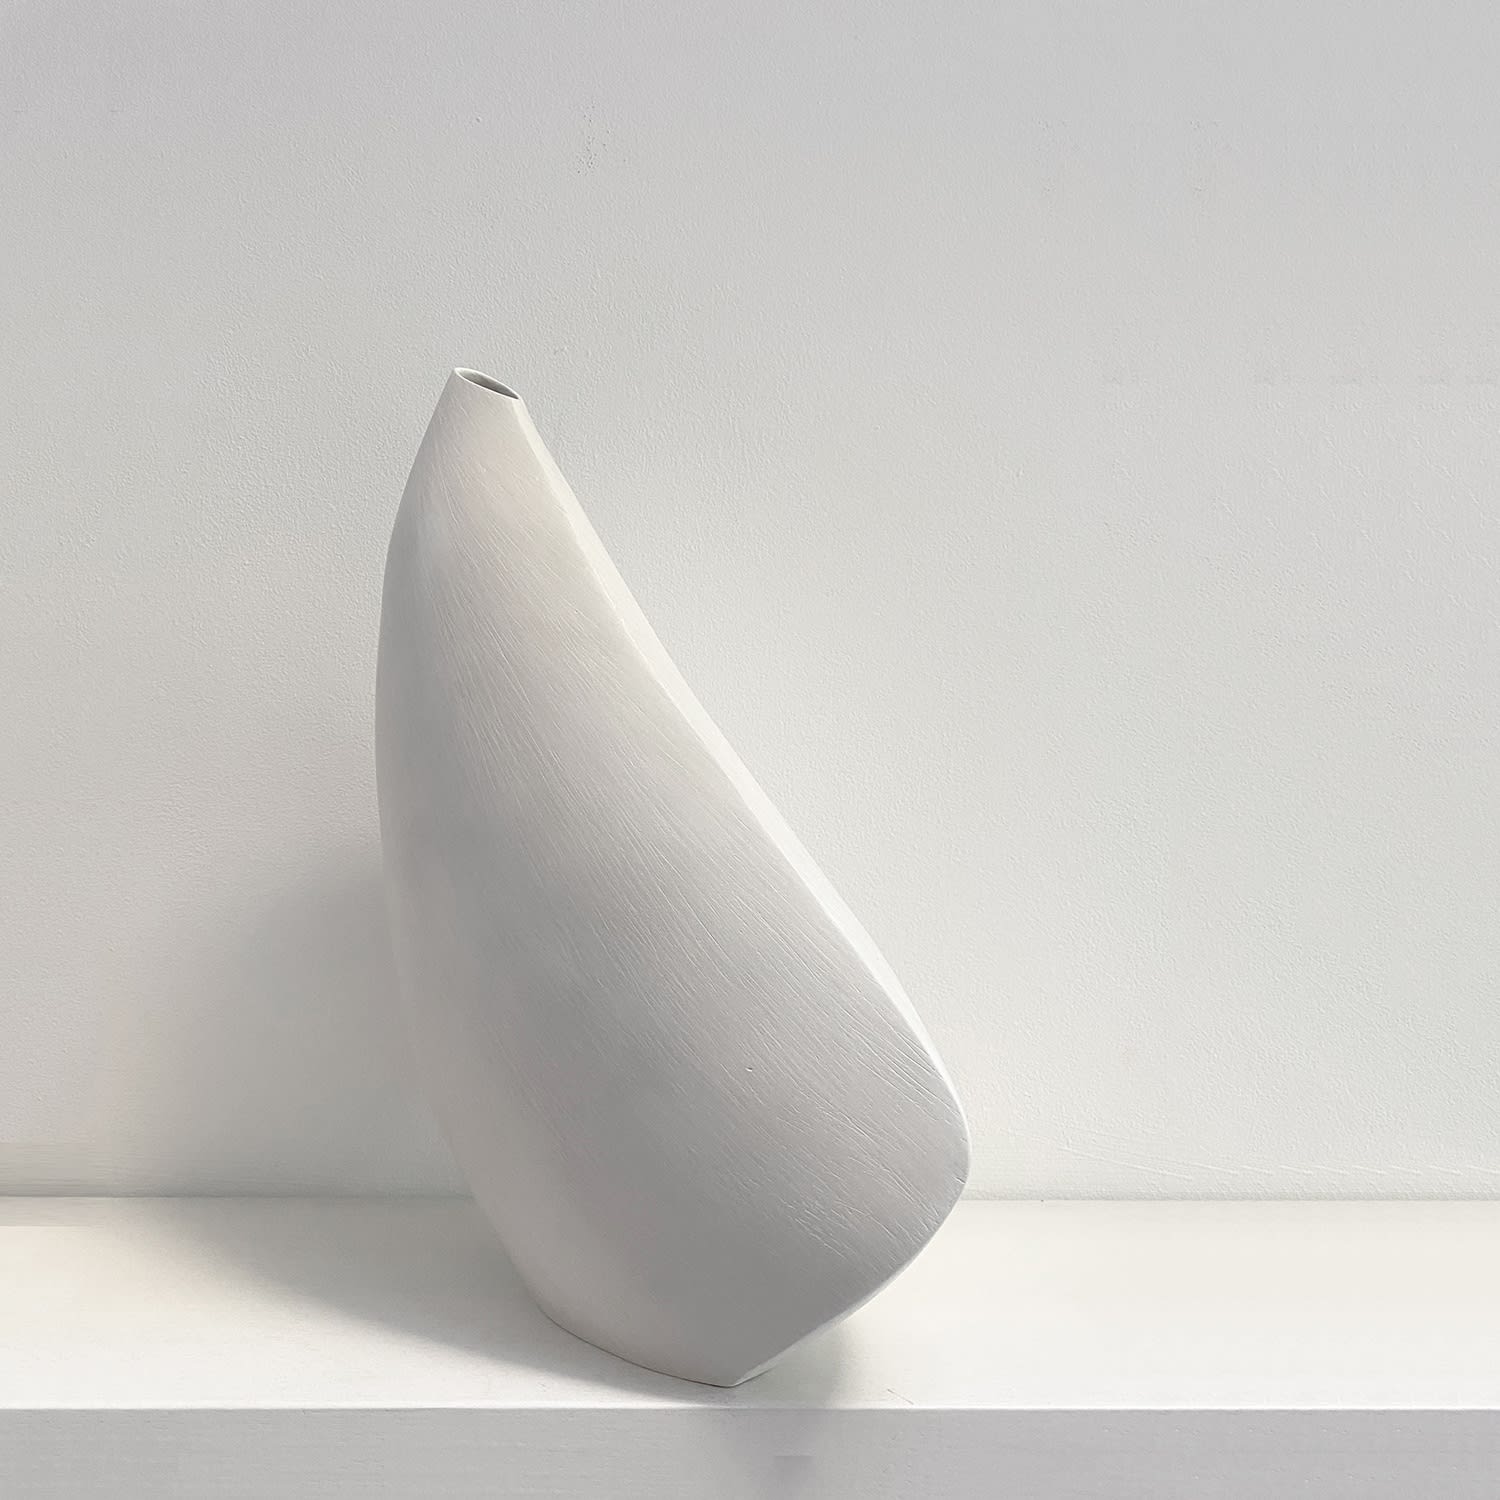 Soledad Christie: Salar, hand-built ceramic vessel, 31 x 21 x 12cm, 2021